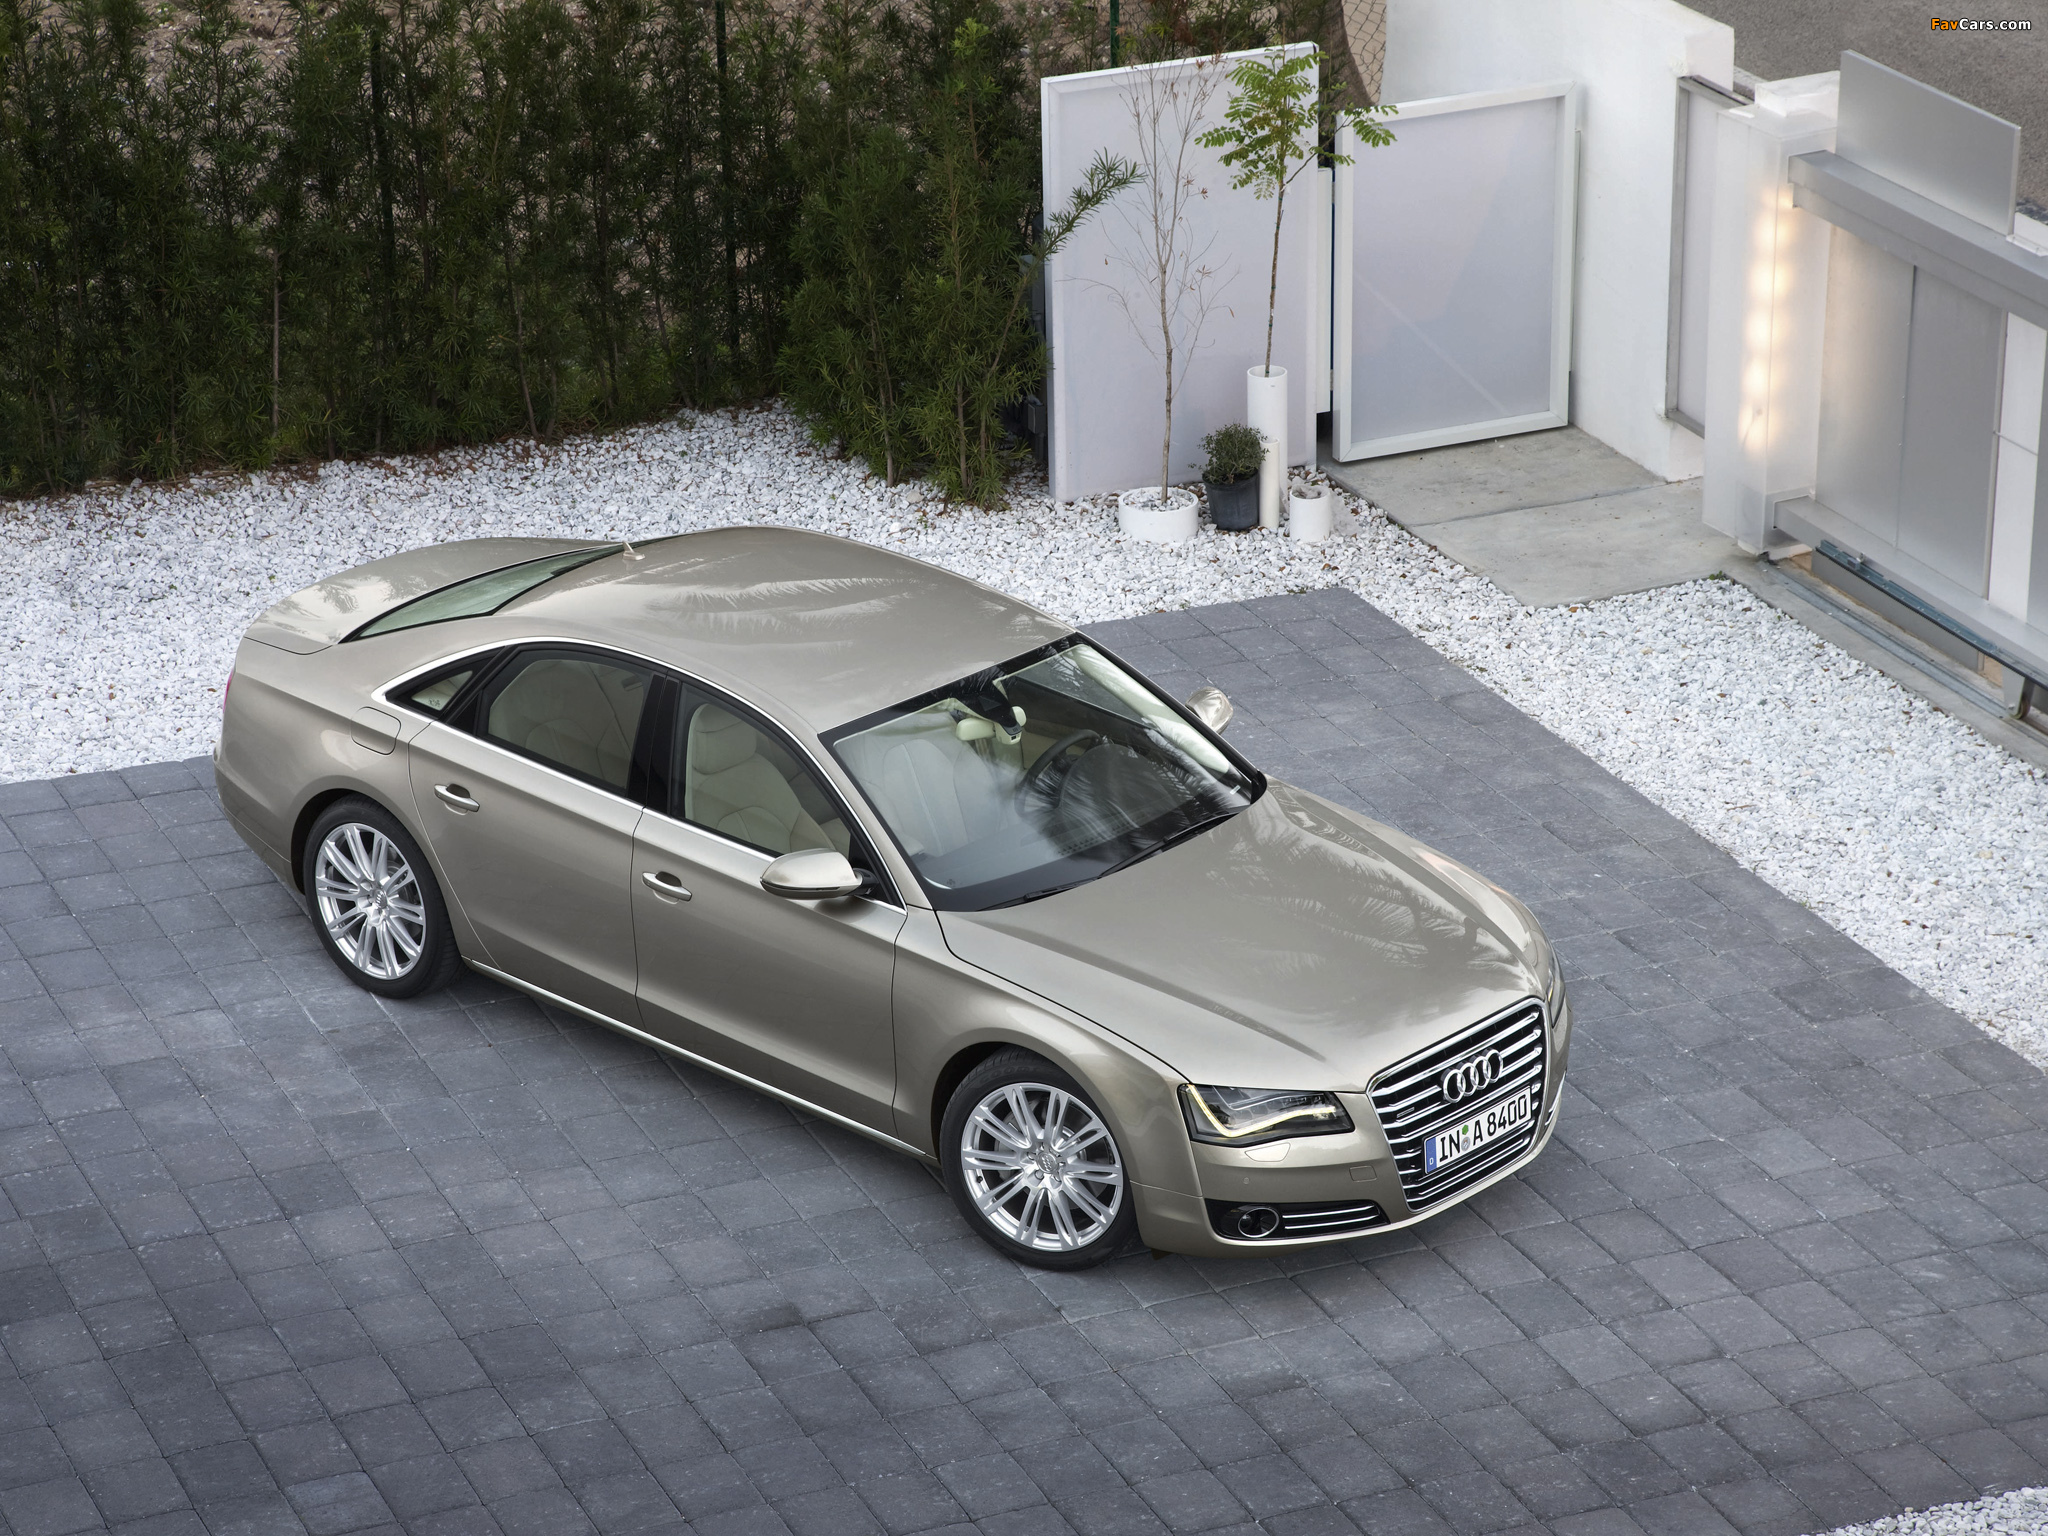 Audi A8 4.2 FSI quattro (D4) 2010 wallpapers (2048 x 1536)